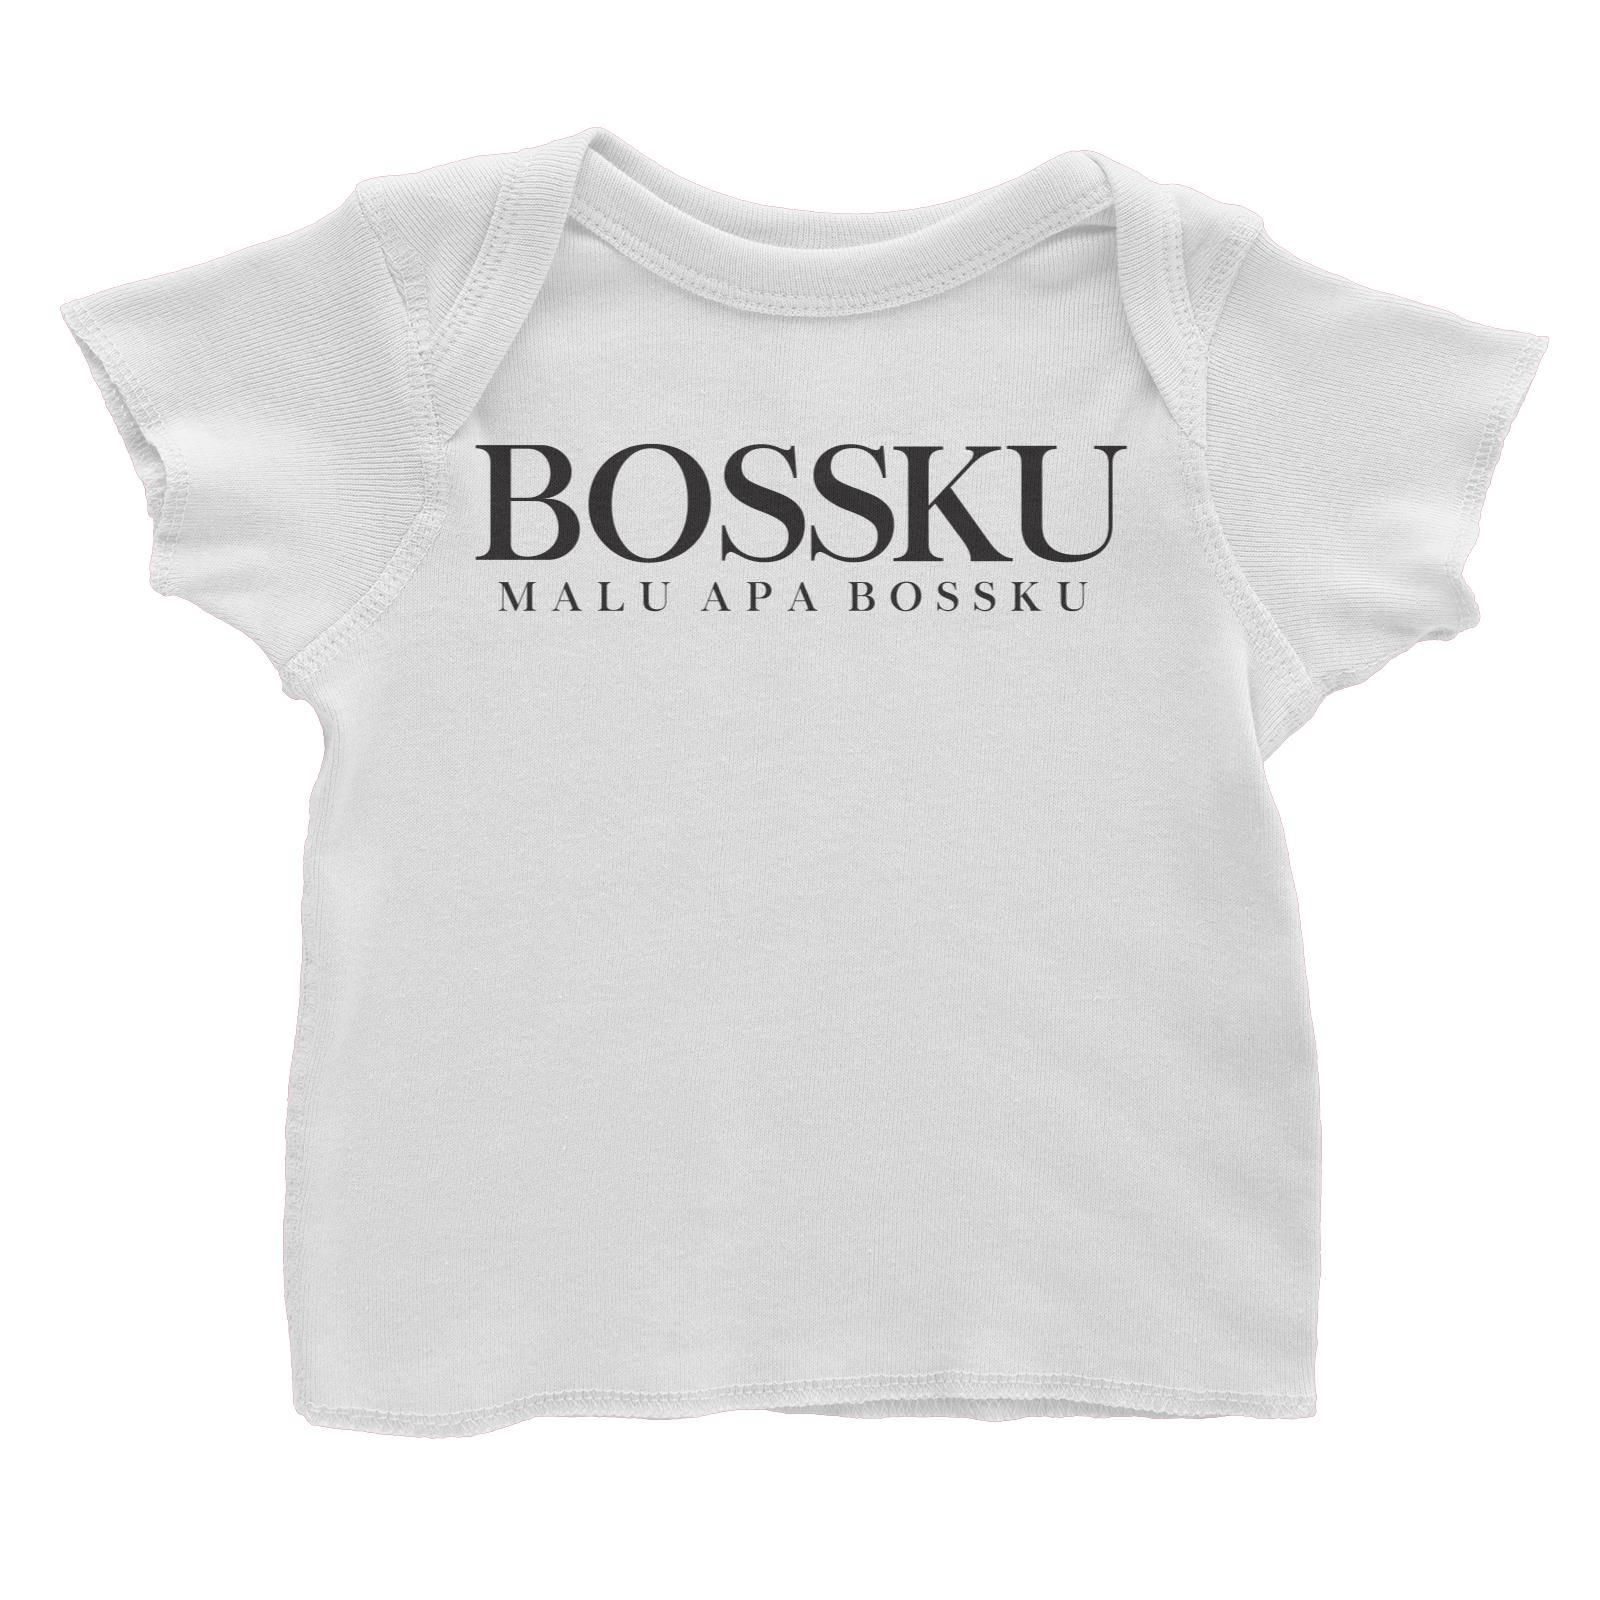 Slang Statement Bossku Malu Apa Bossku Baby T-Shirt